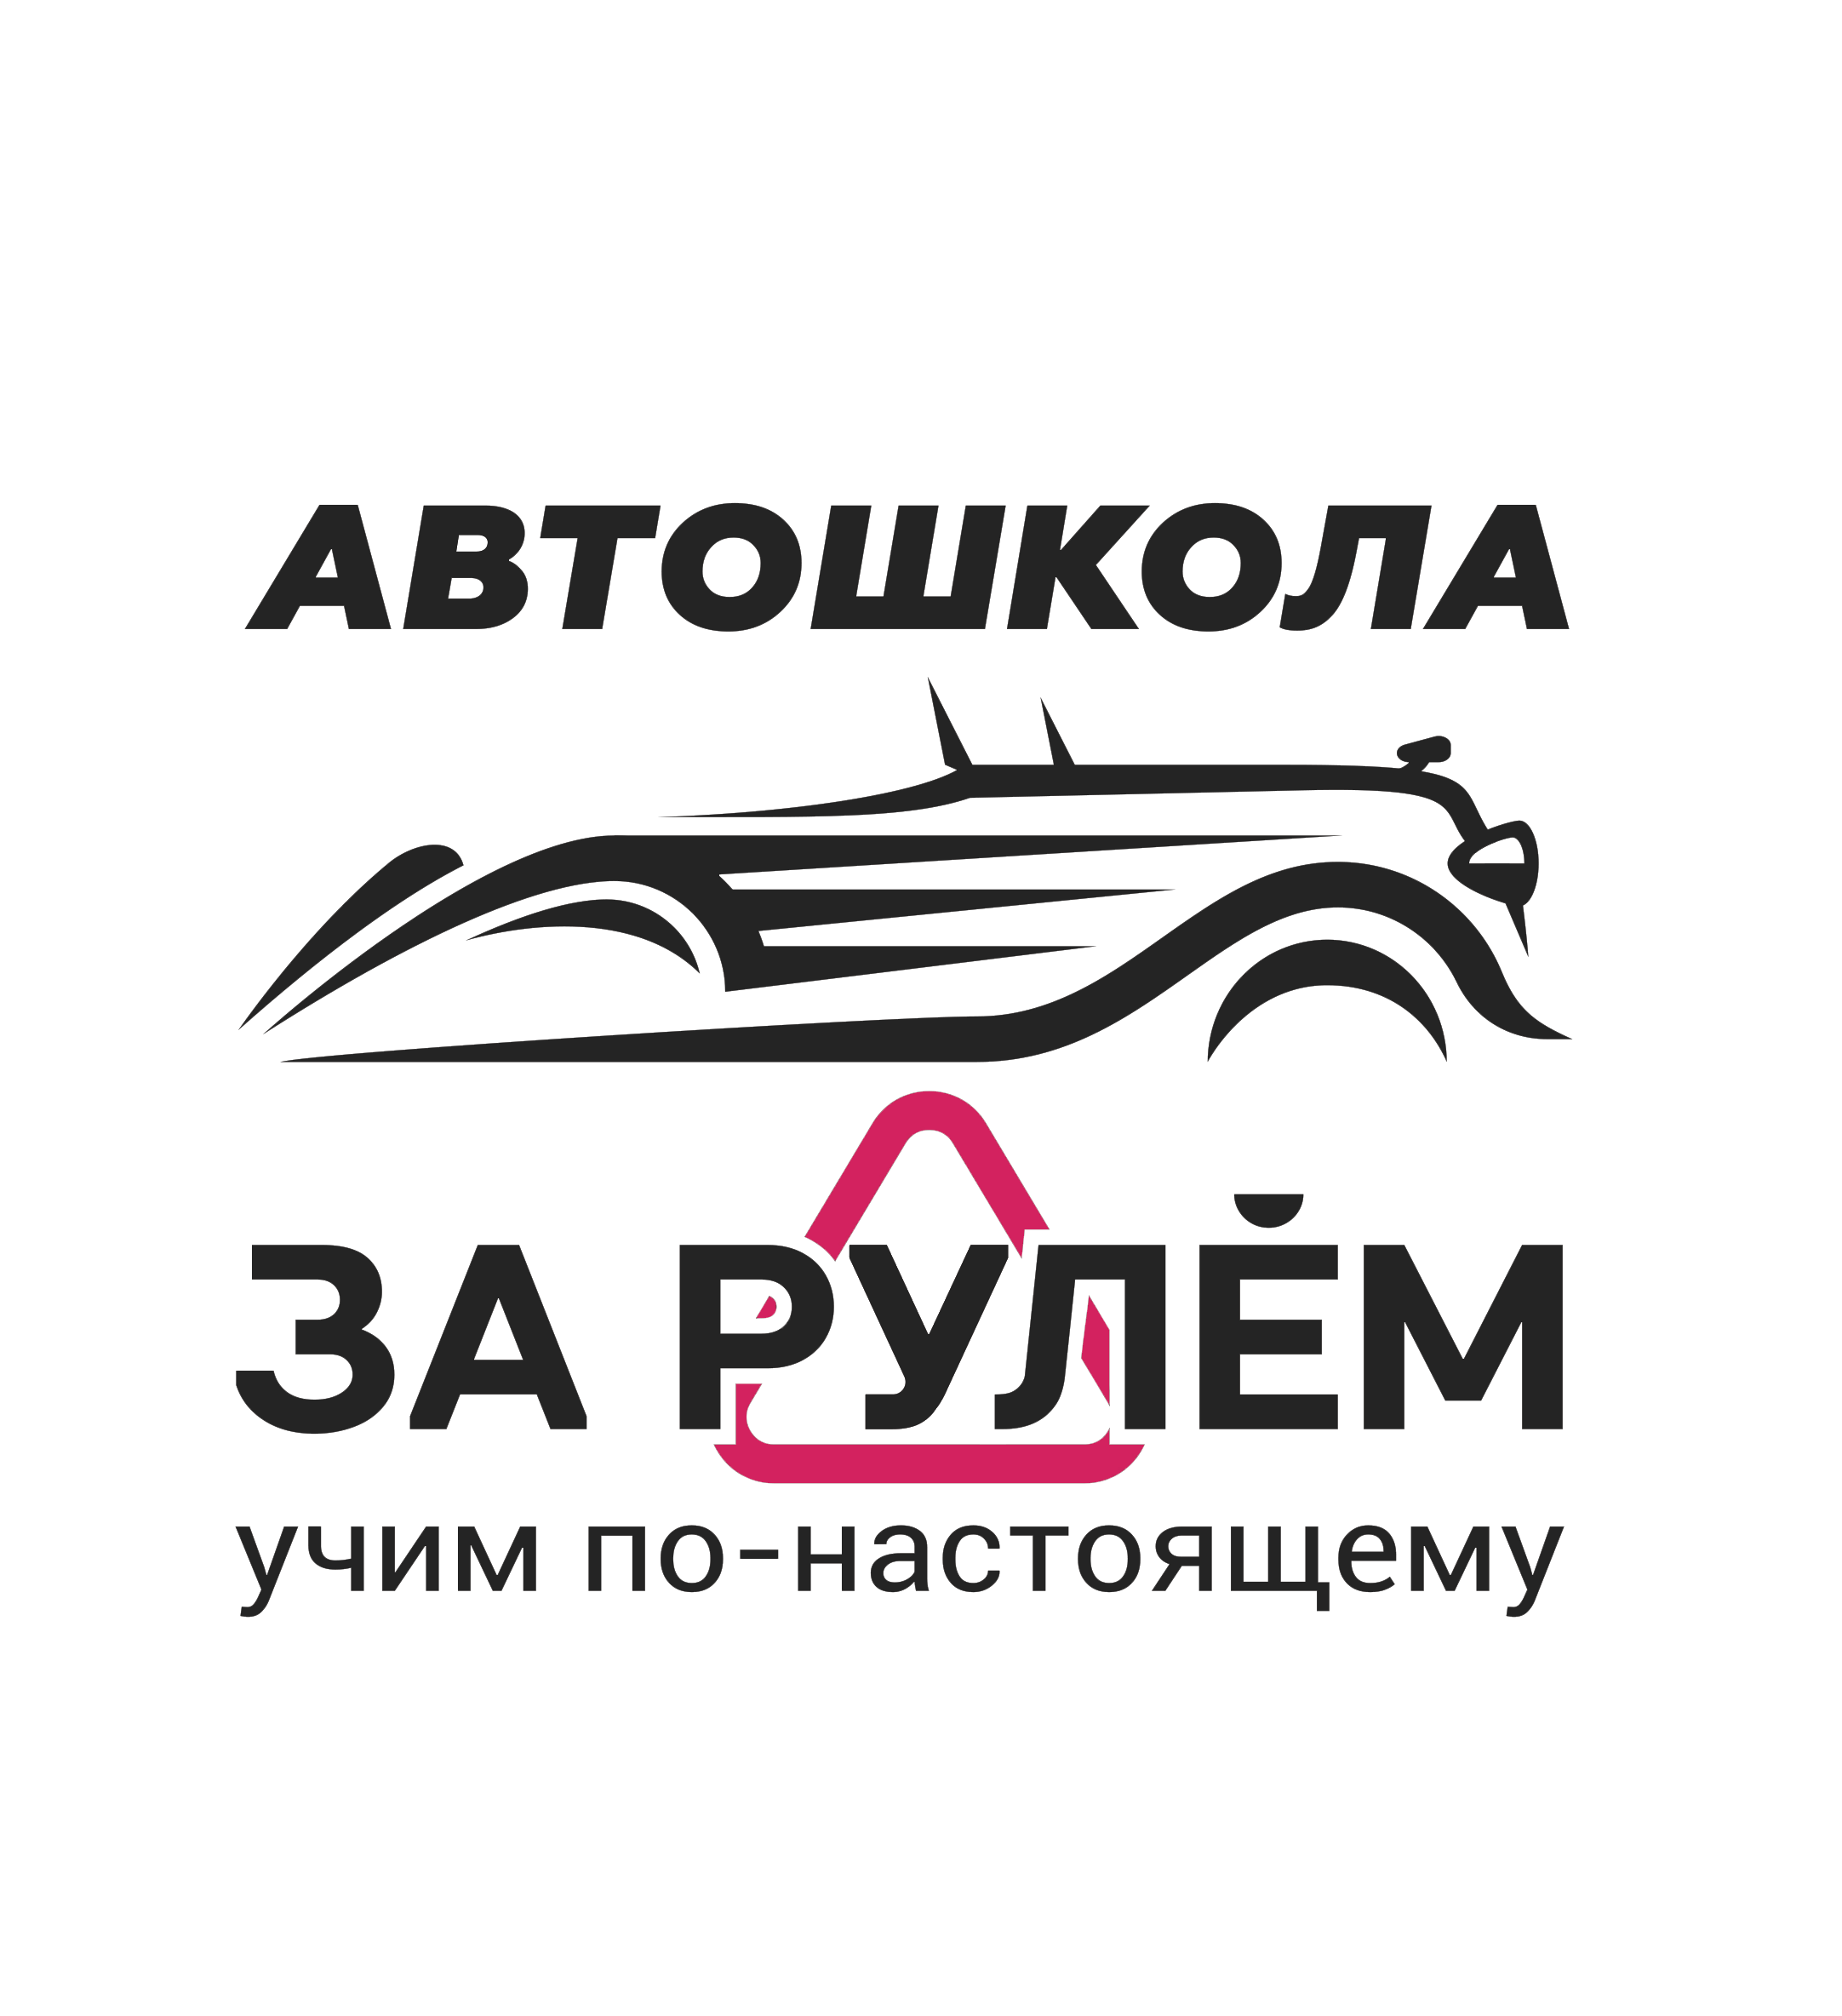 ЧОУПО «За рулем» - Город Новосибирск тёмный-logotip_avtoshkola.png